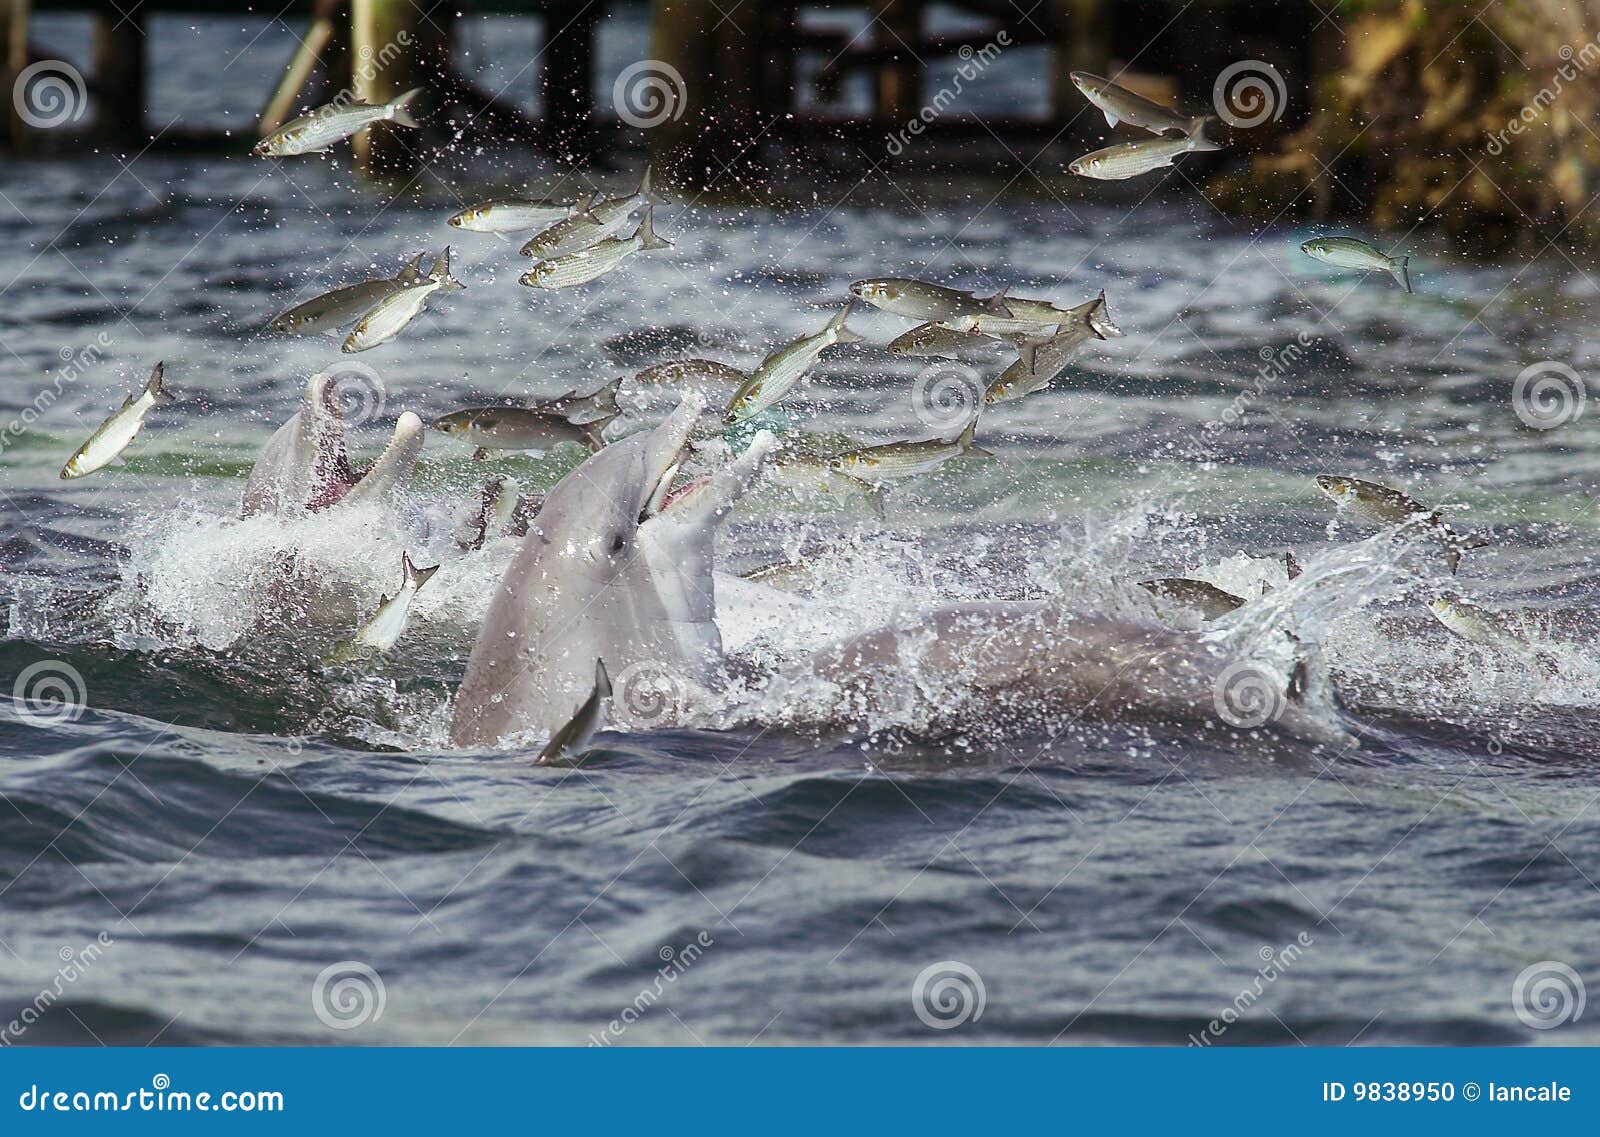 dolphins feeding